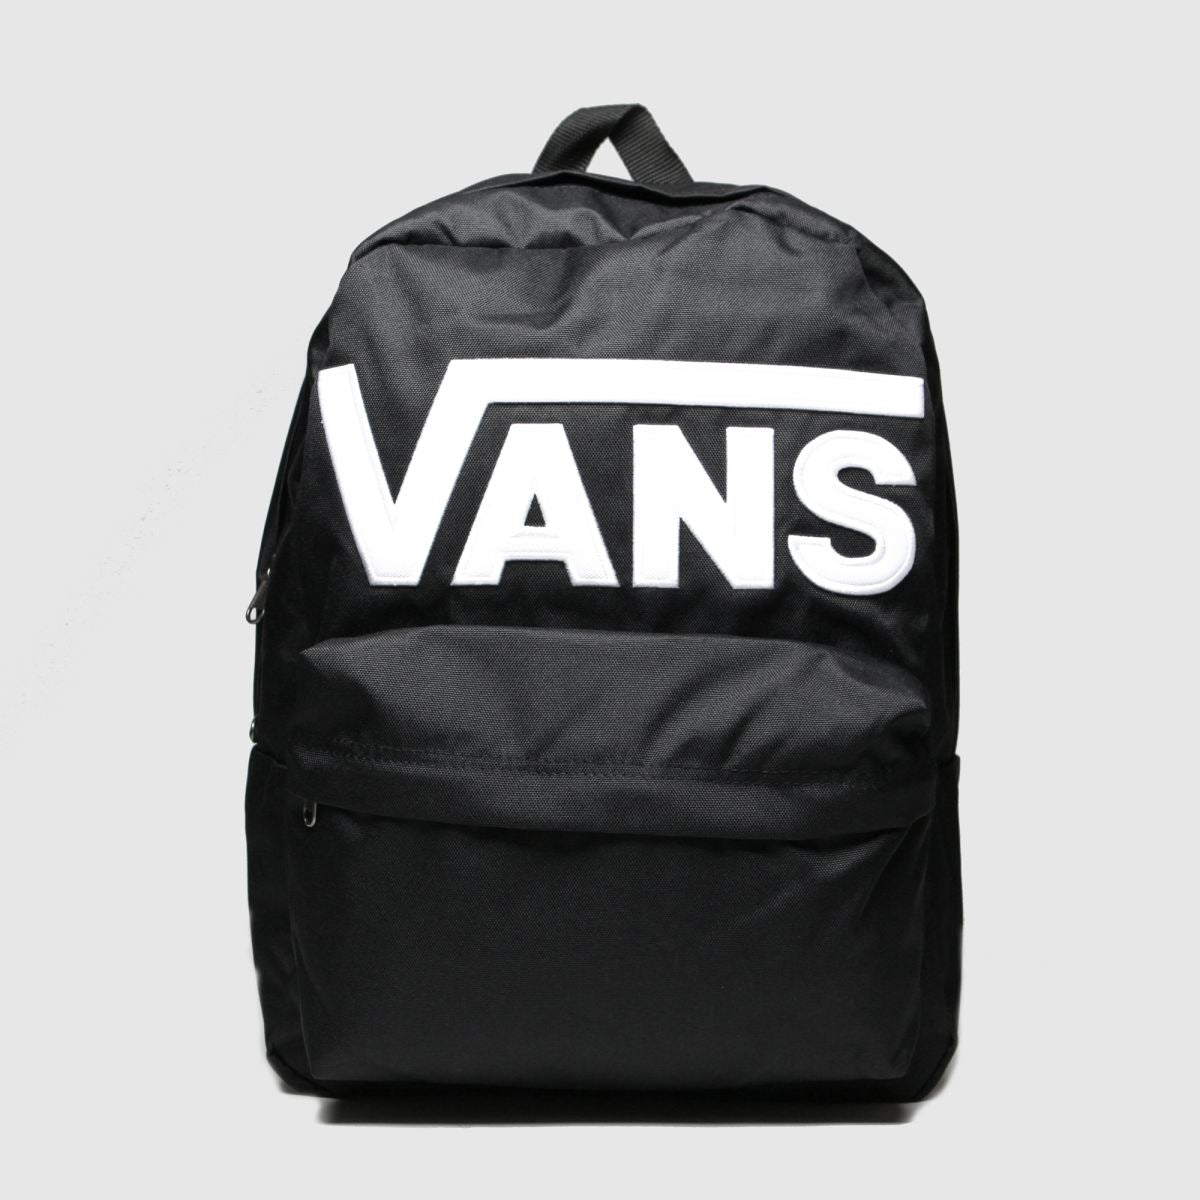 Vans Old Skool Backpack Black/White